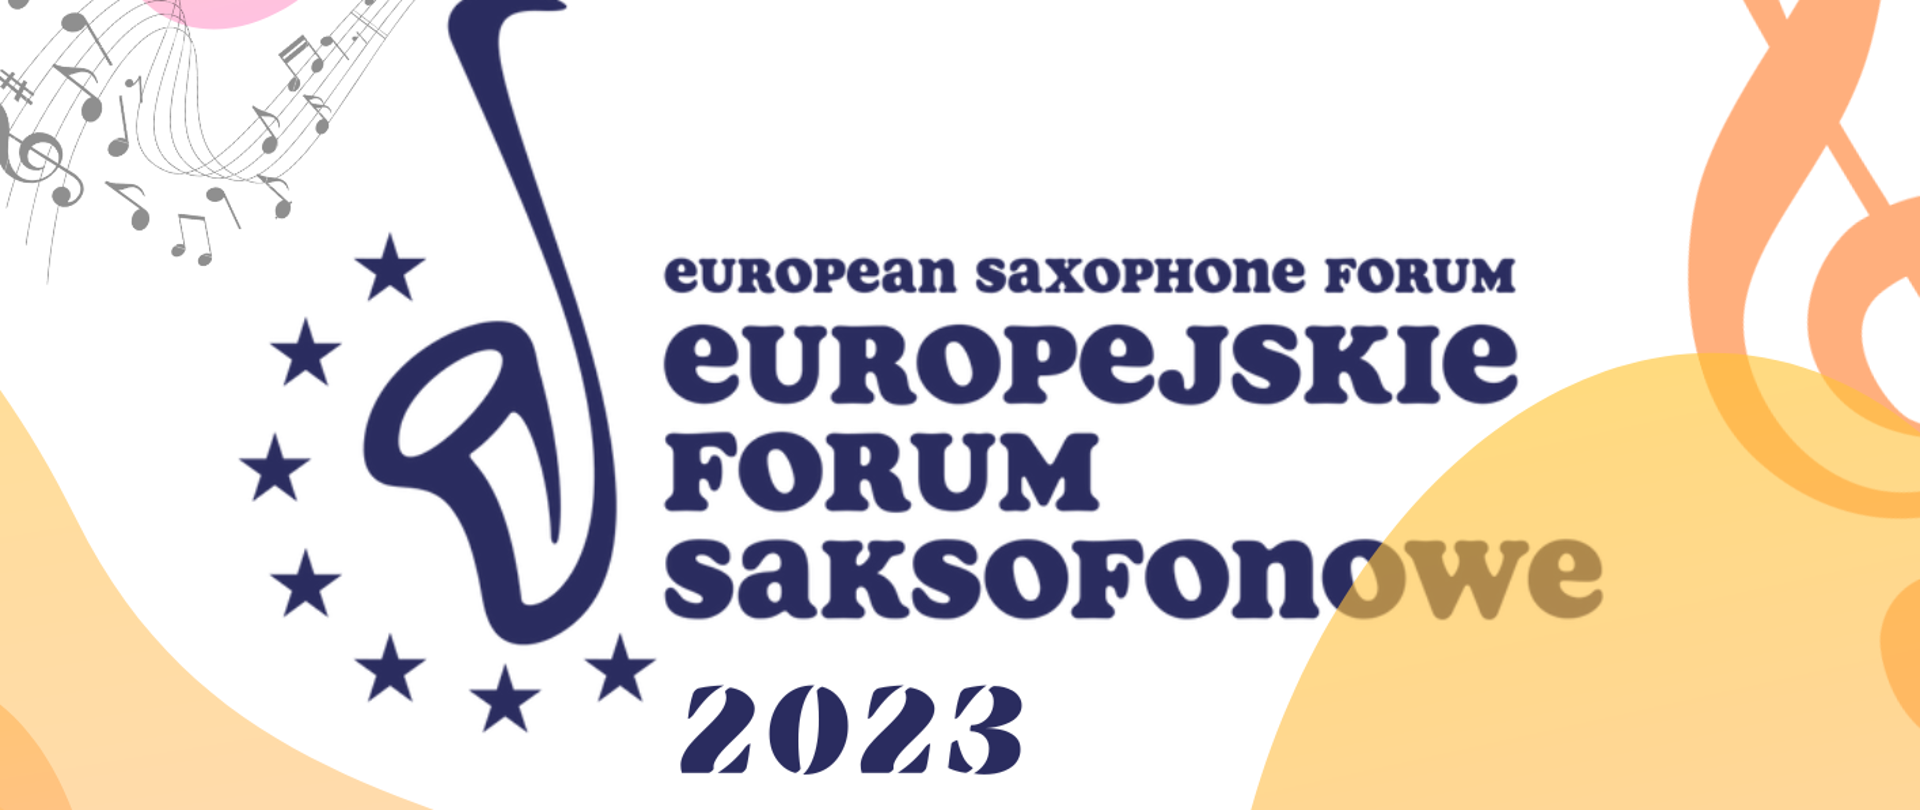 Plakat zapowiadający Koncert w ramach Europejskiego Forum Saksofonowego. Zawiera zdjęcia wykonawców oraz program: 9 utworów. 